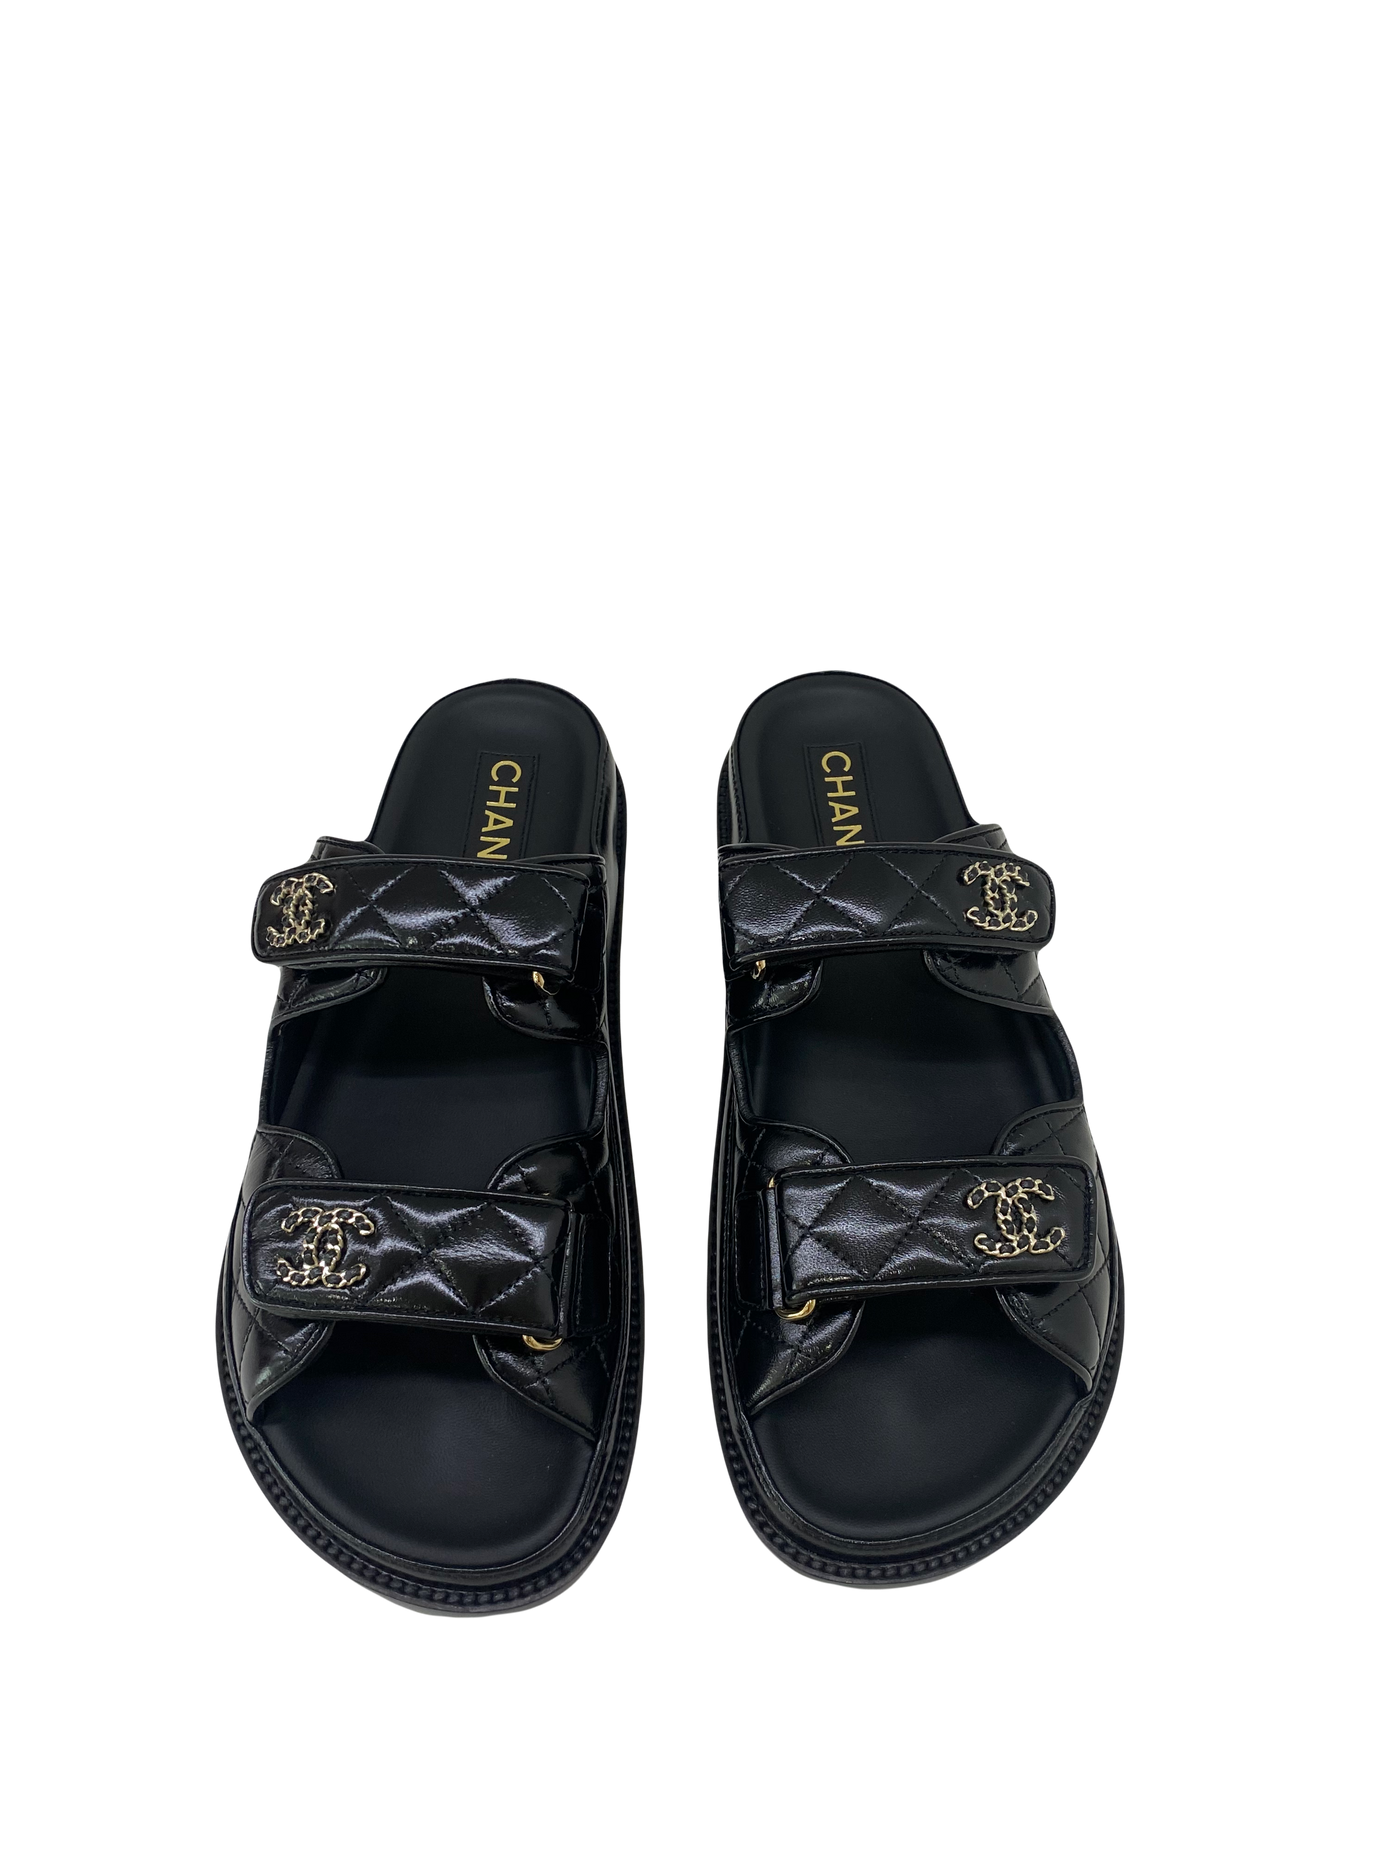 Chanel Dad Sandal Slide - Size 37